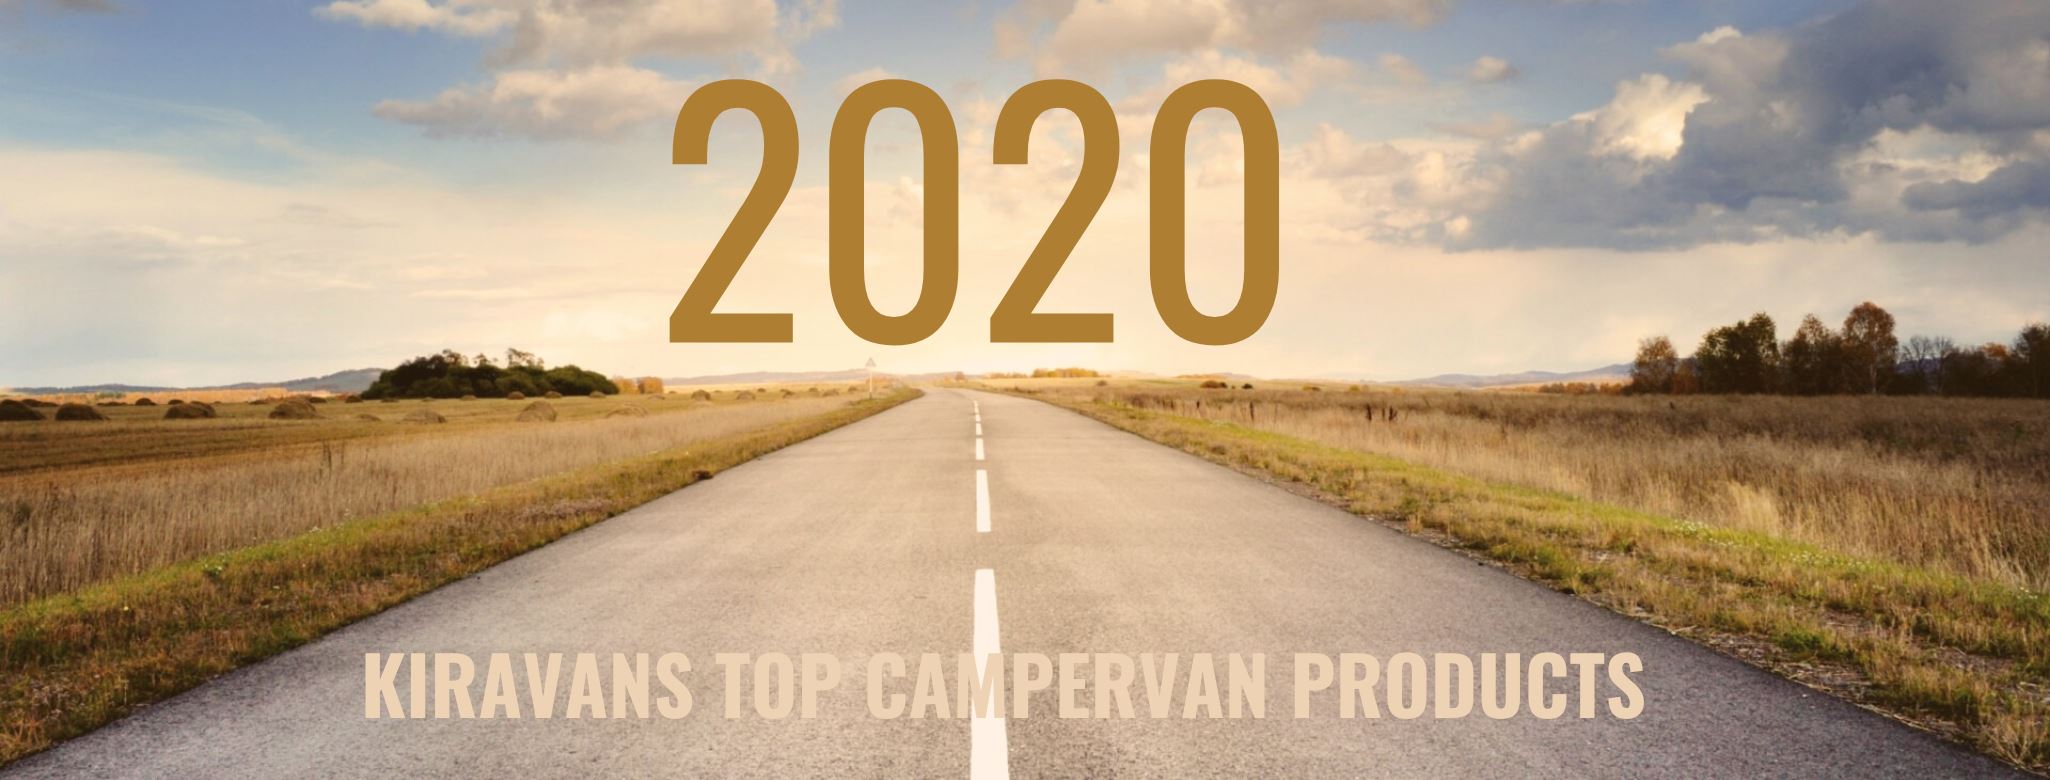 Kiravans 2020 top 5 campervan products